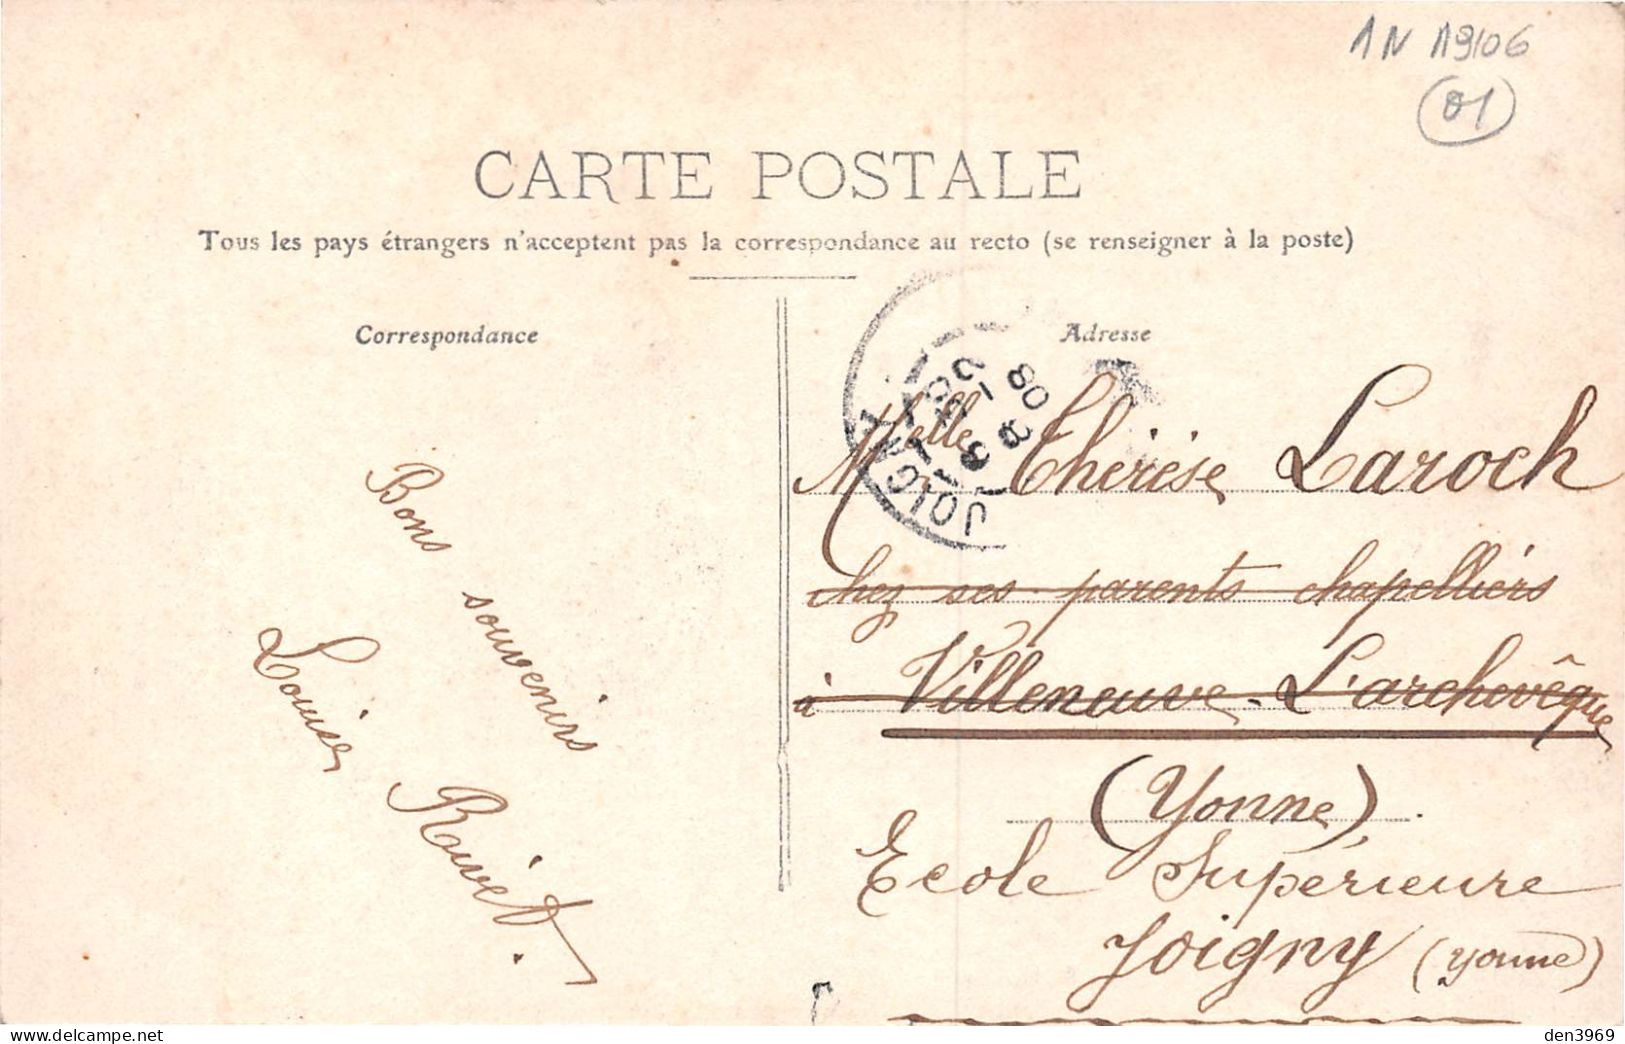 PONT-de-VAUX (Ain) - Place Joubert - Passage Du Tramway - Voyagé 1908 (2 Scans) - Pont-de-Vaux